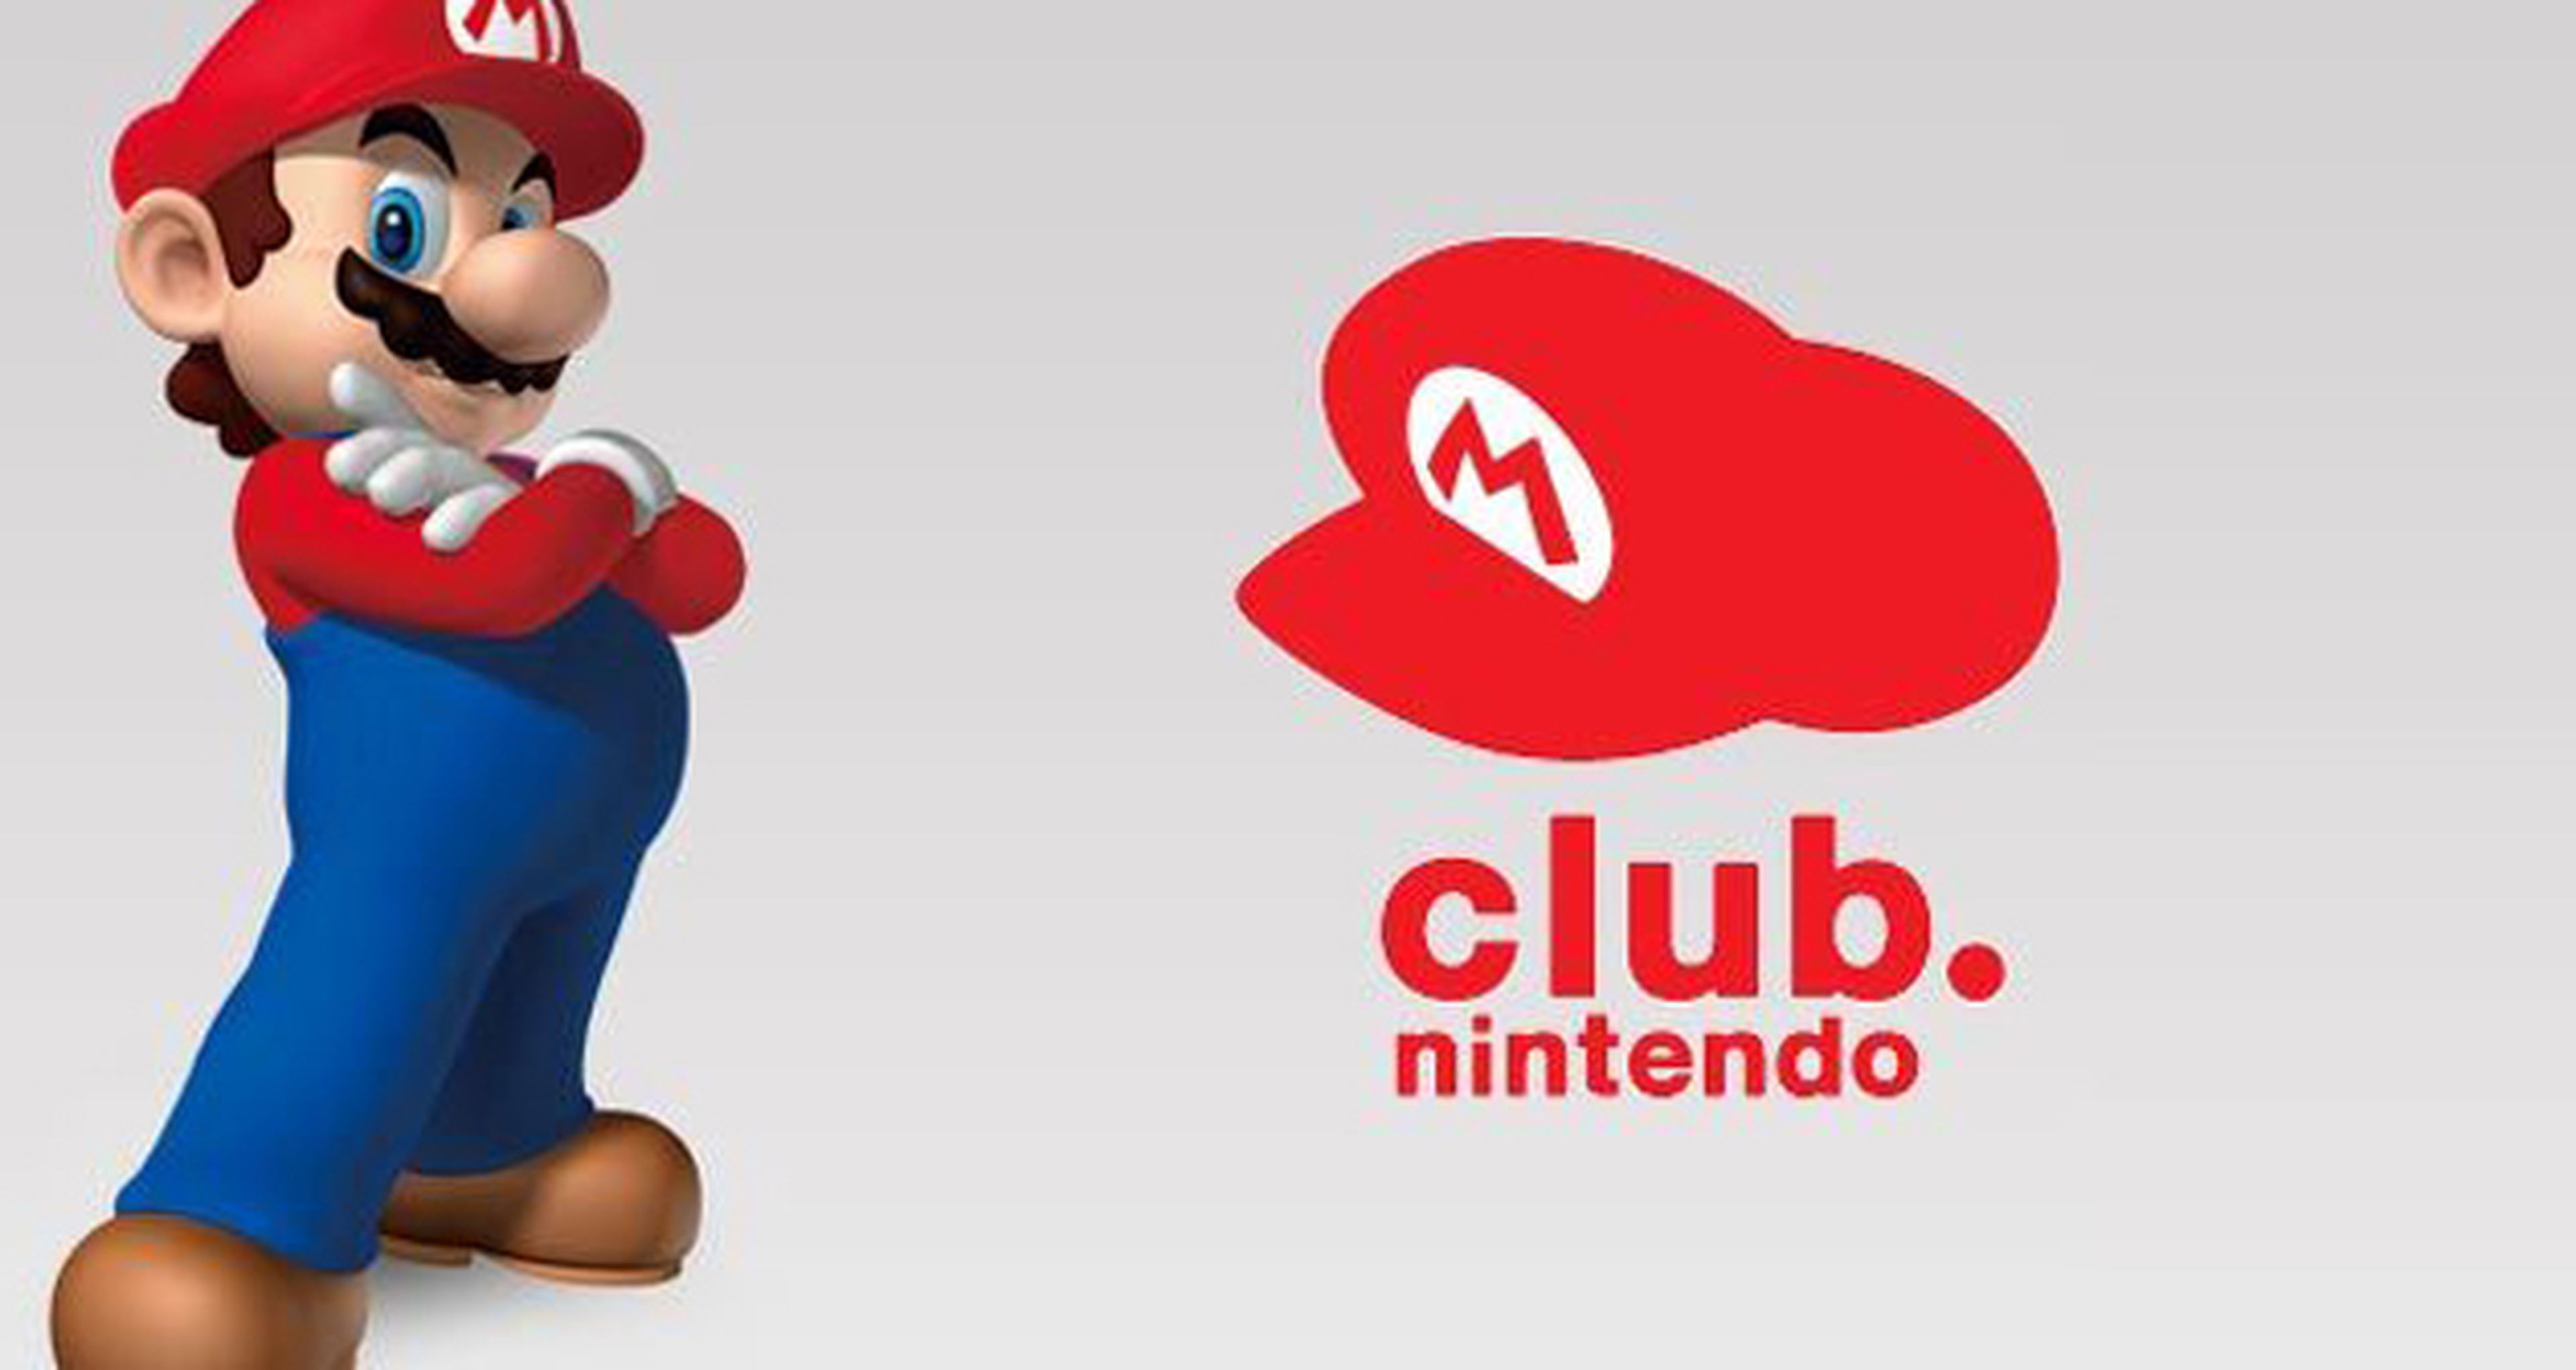 Nintendo club. Nintendo обмен играми.